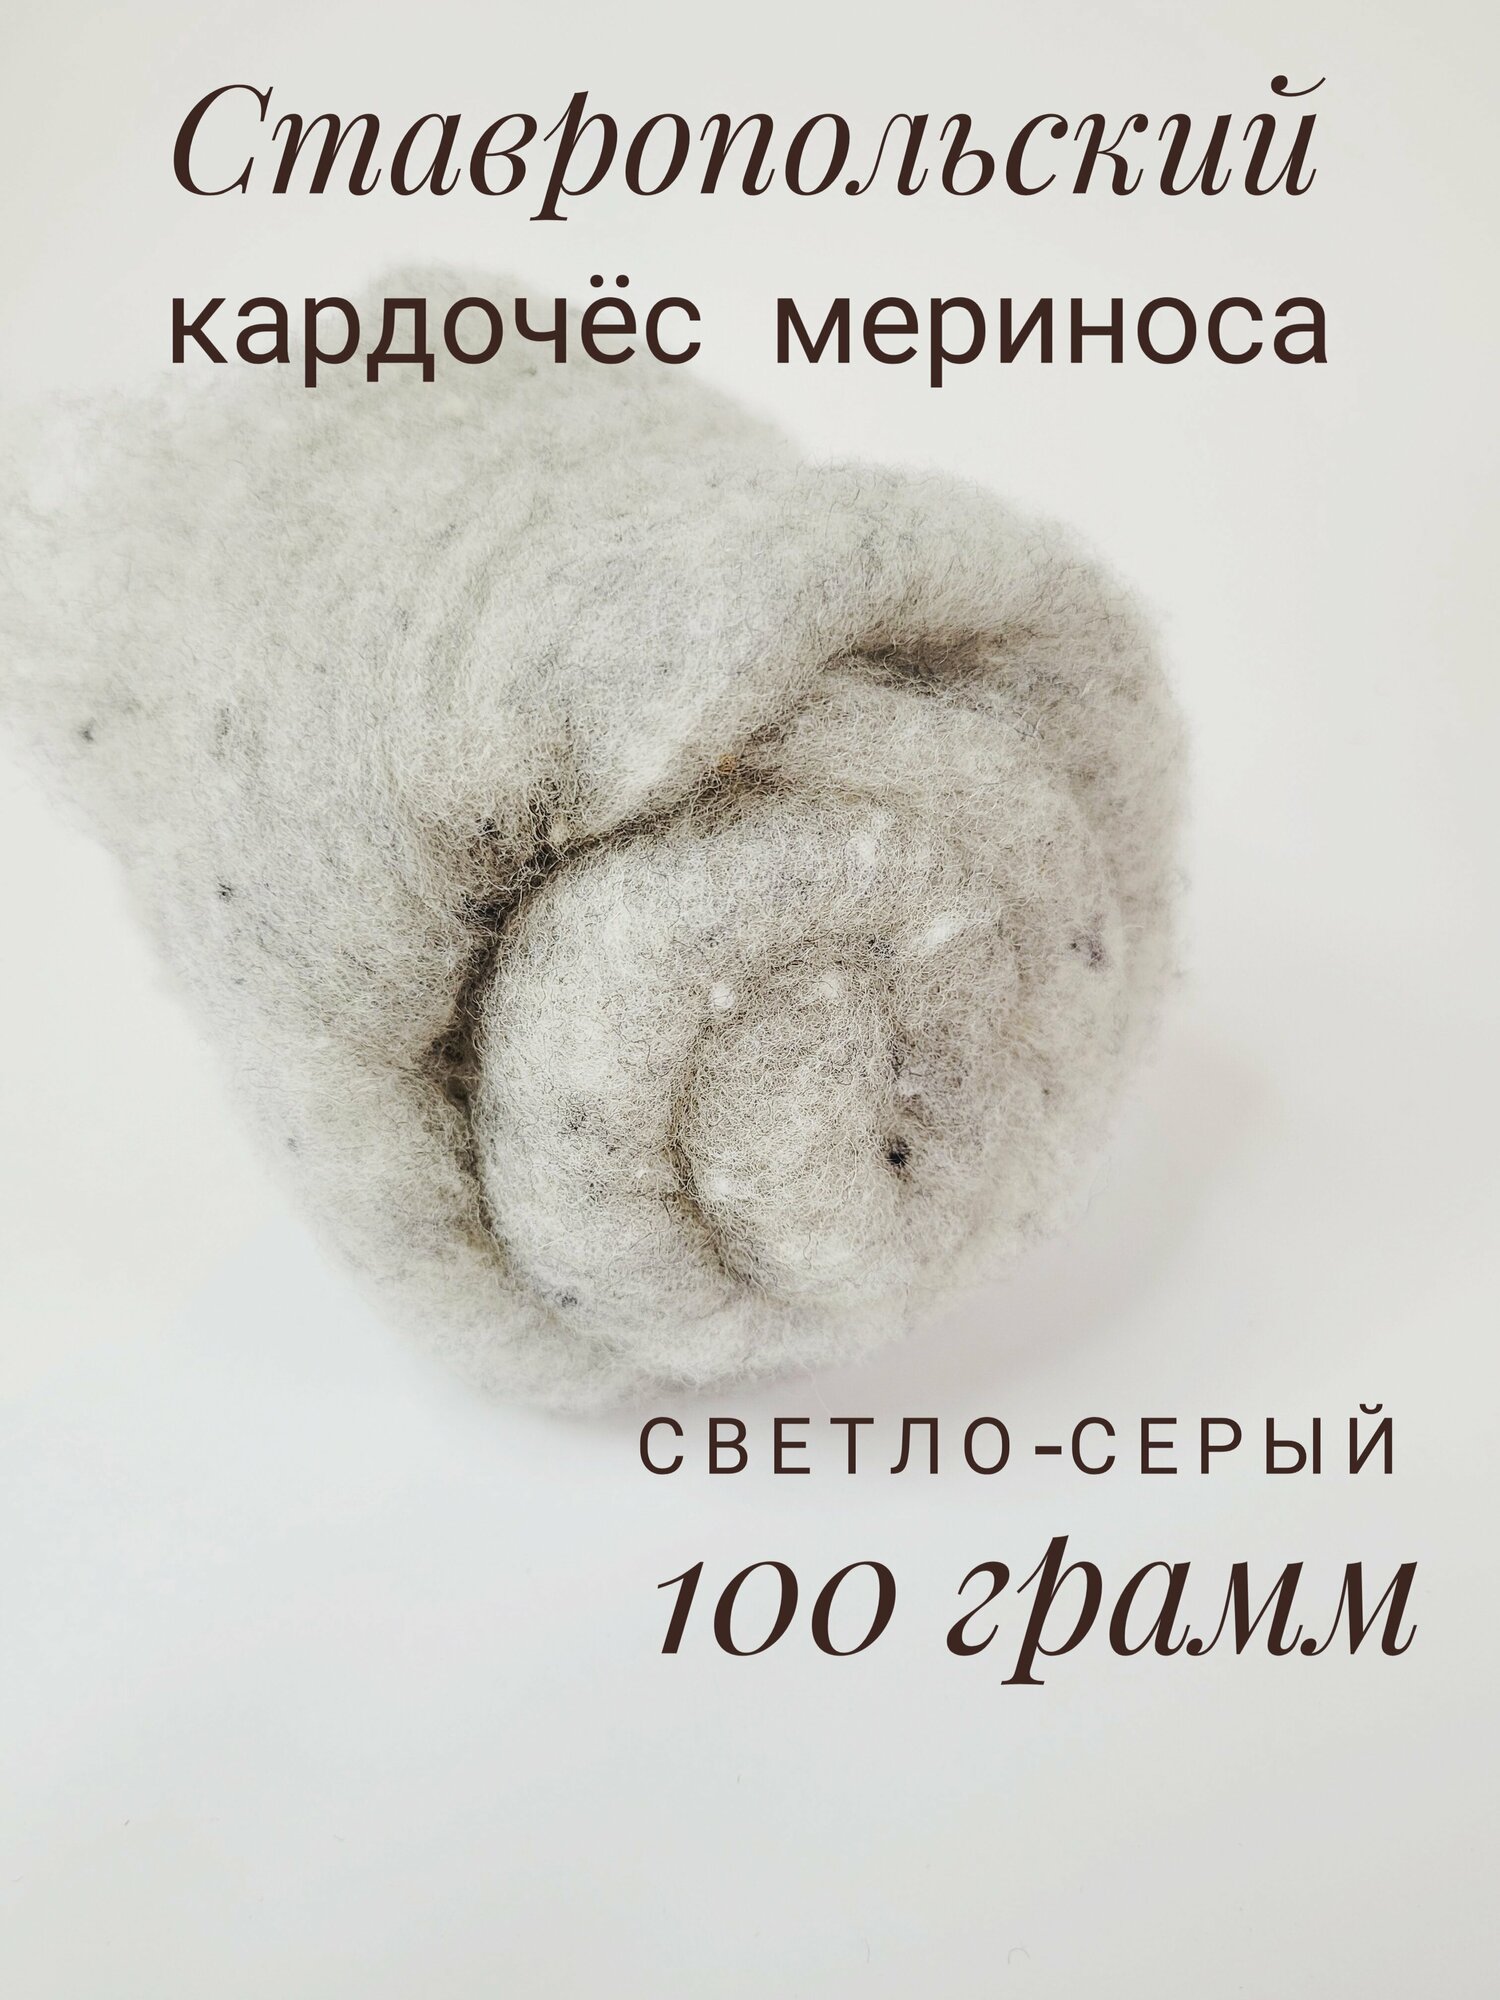 Шерсть для валяния кардочес 100 грамм, Ставропольский кардочес